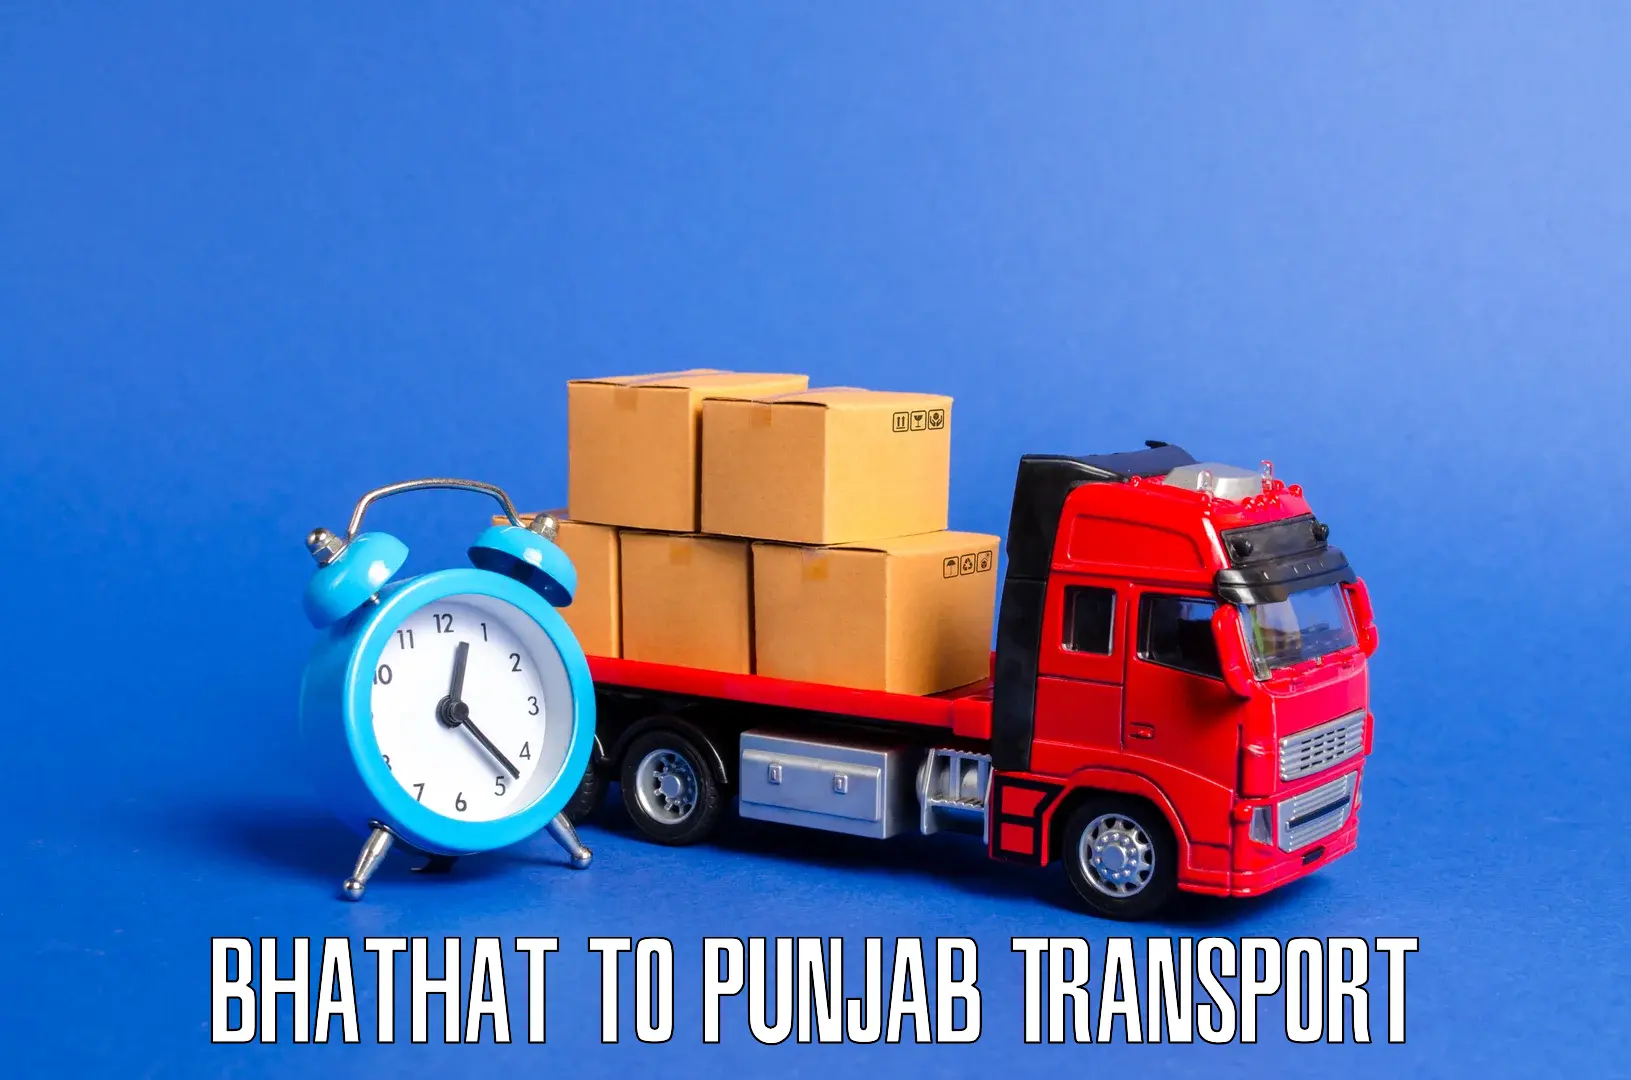 Transport services Bhathat to Gurdaspur